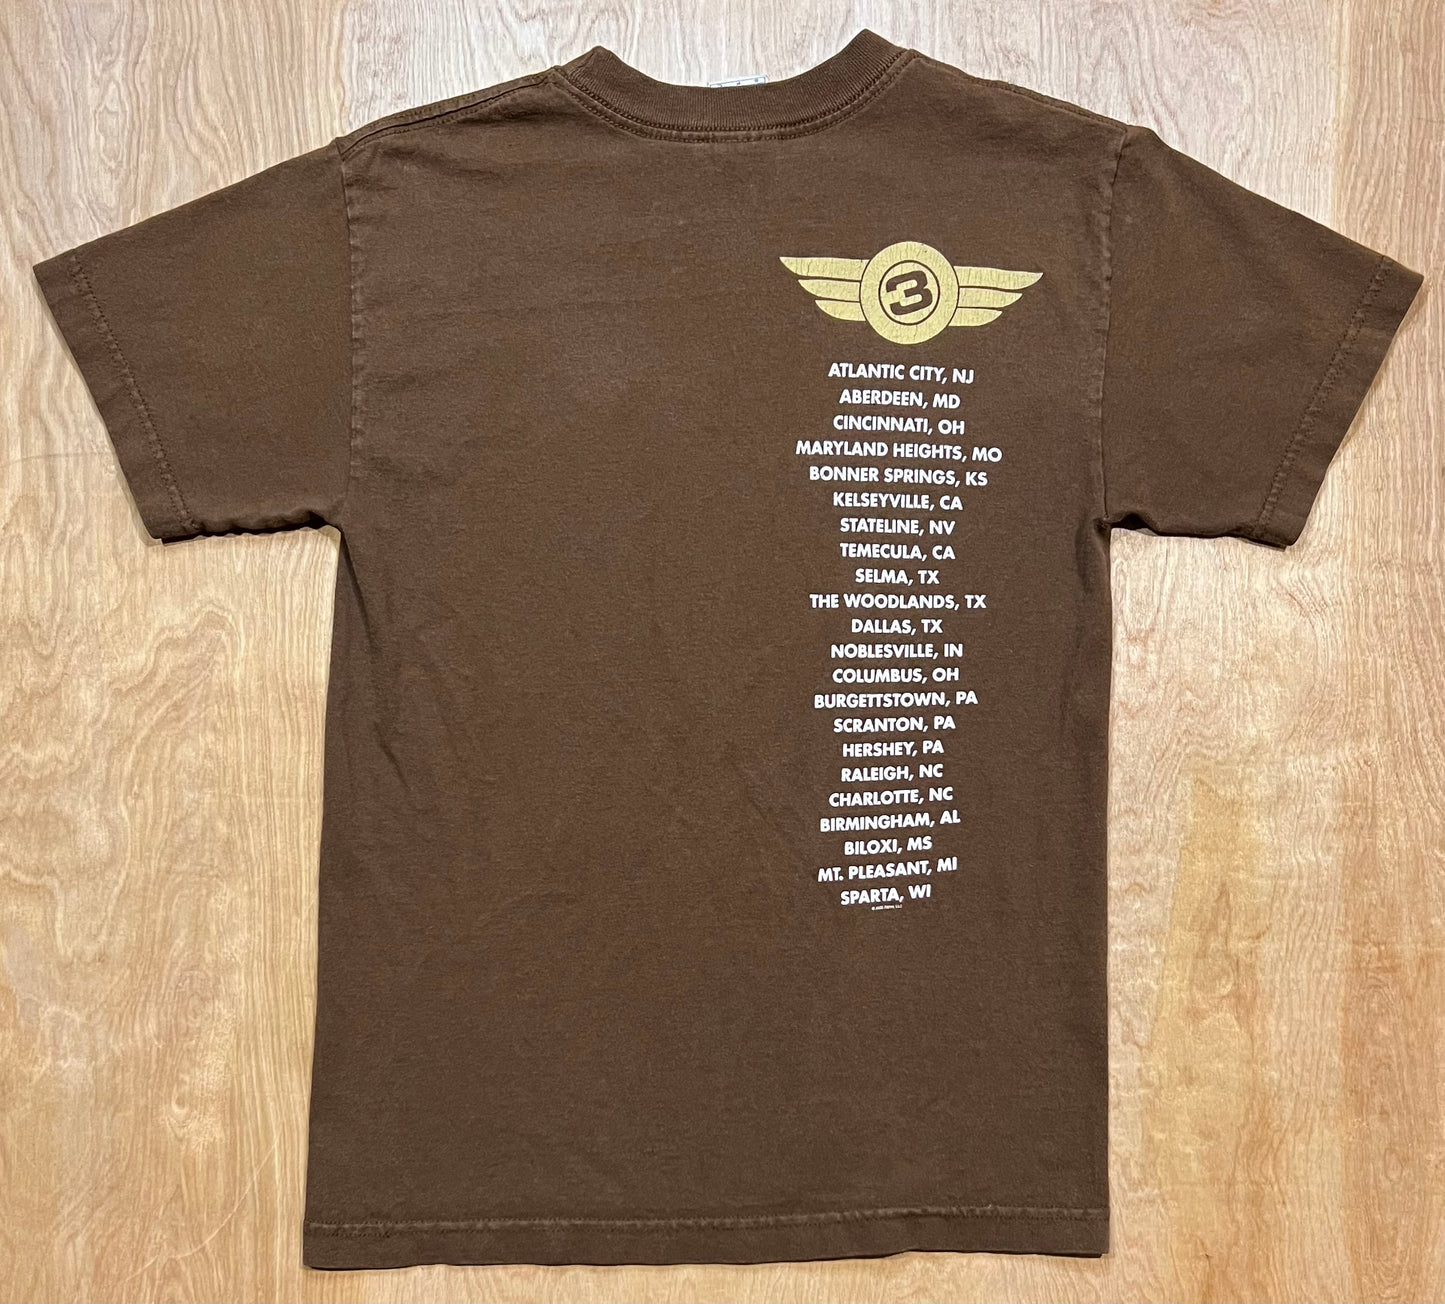 2005 3 Doors Down Tour T-Shirt